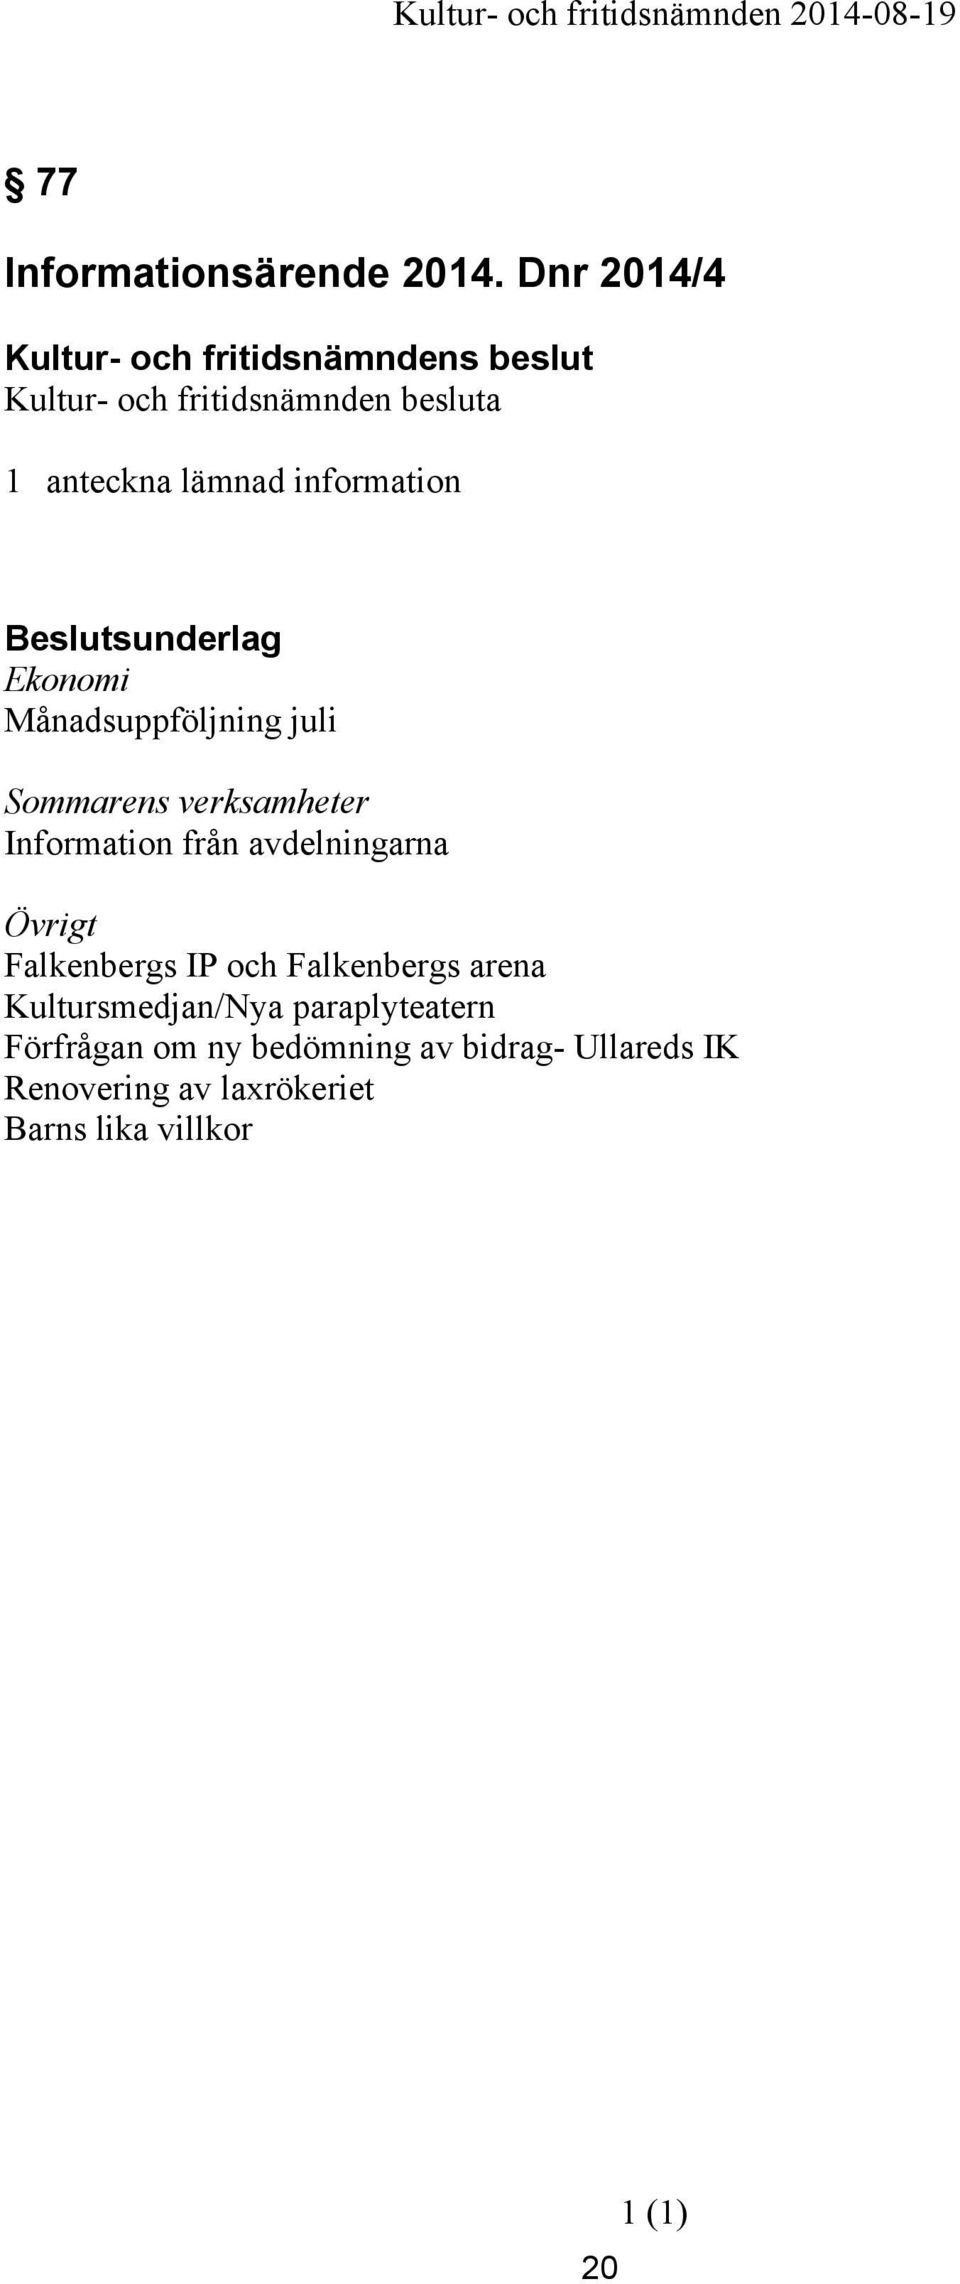 verksamheter Information från avdelningarna Övrigt Falkenbergs IP och Falkenbergs arena